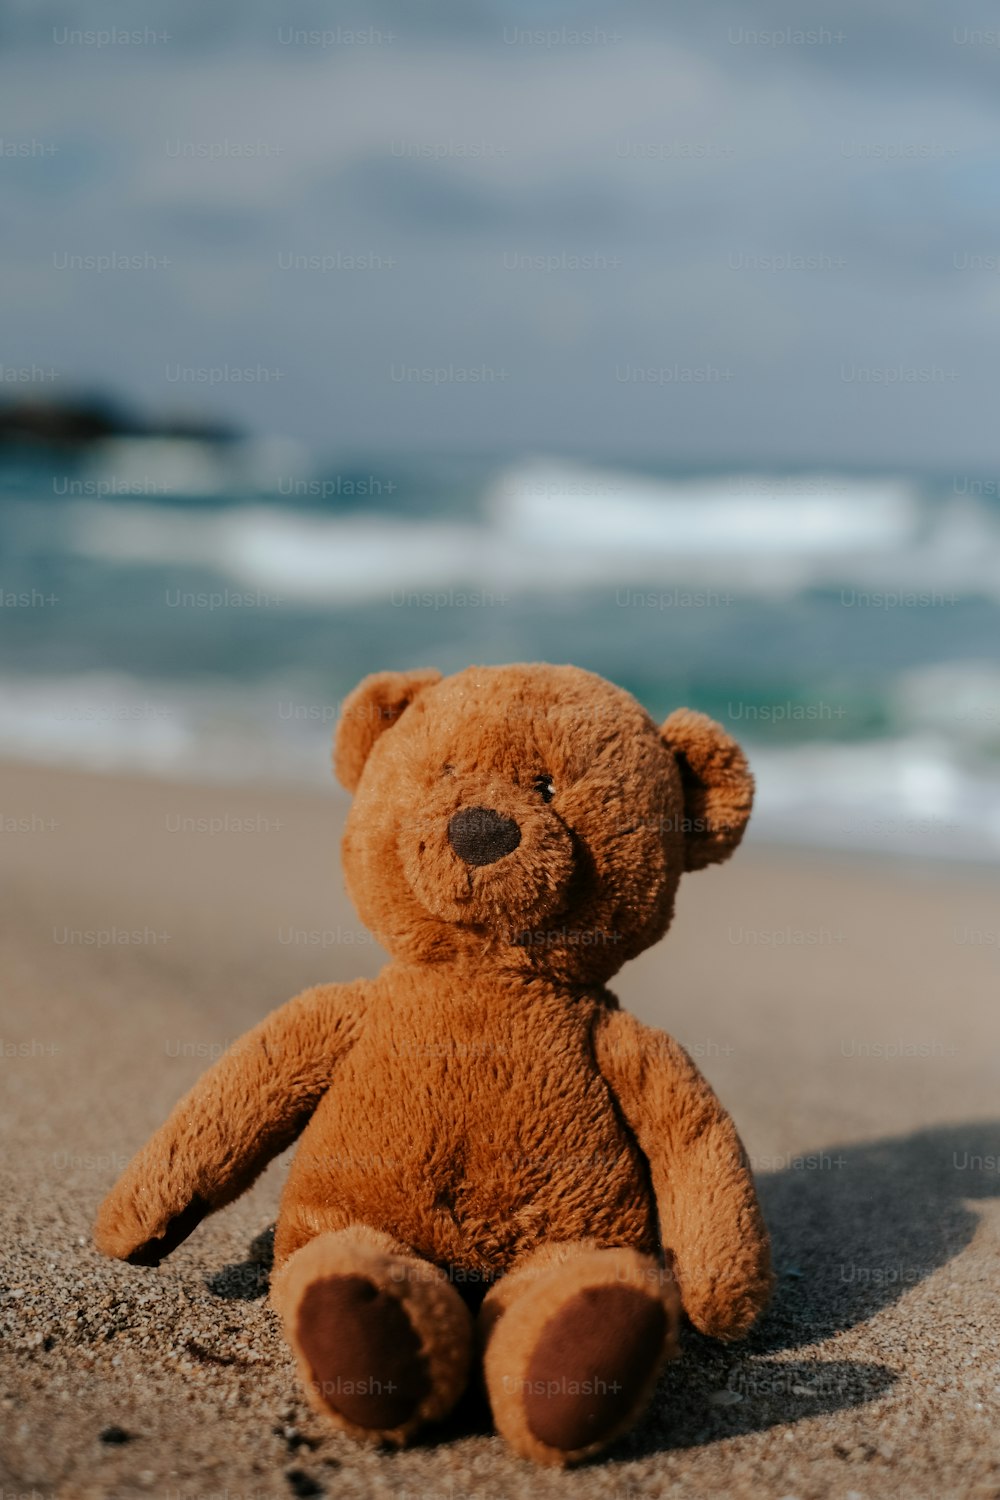 a stuffed bear on a beach